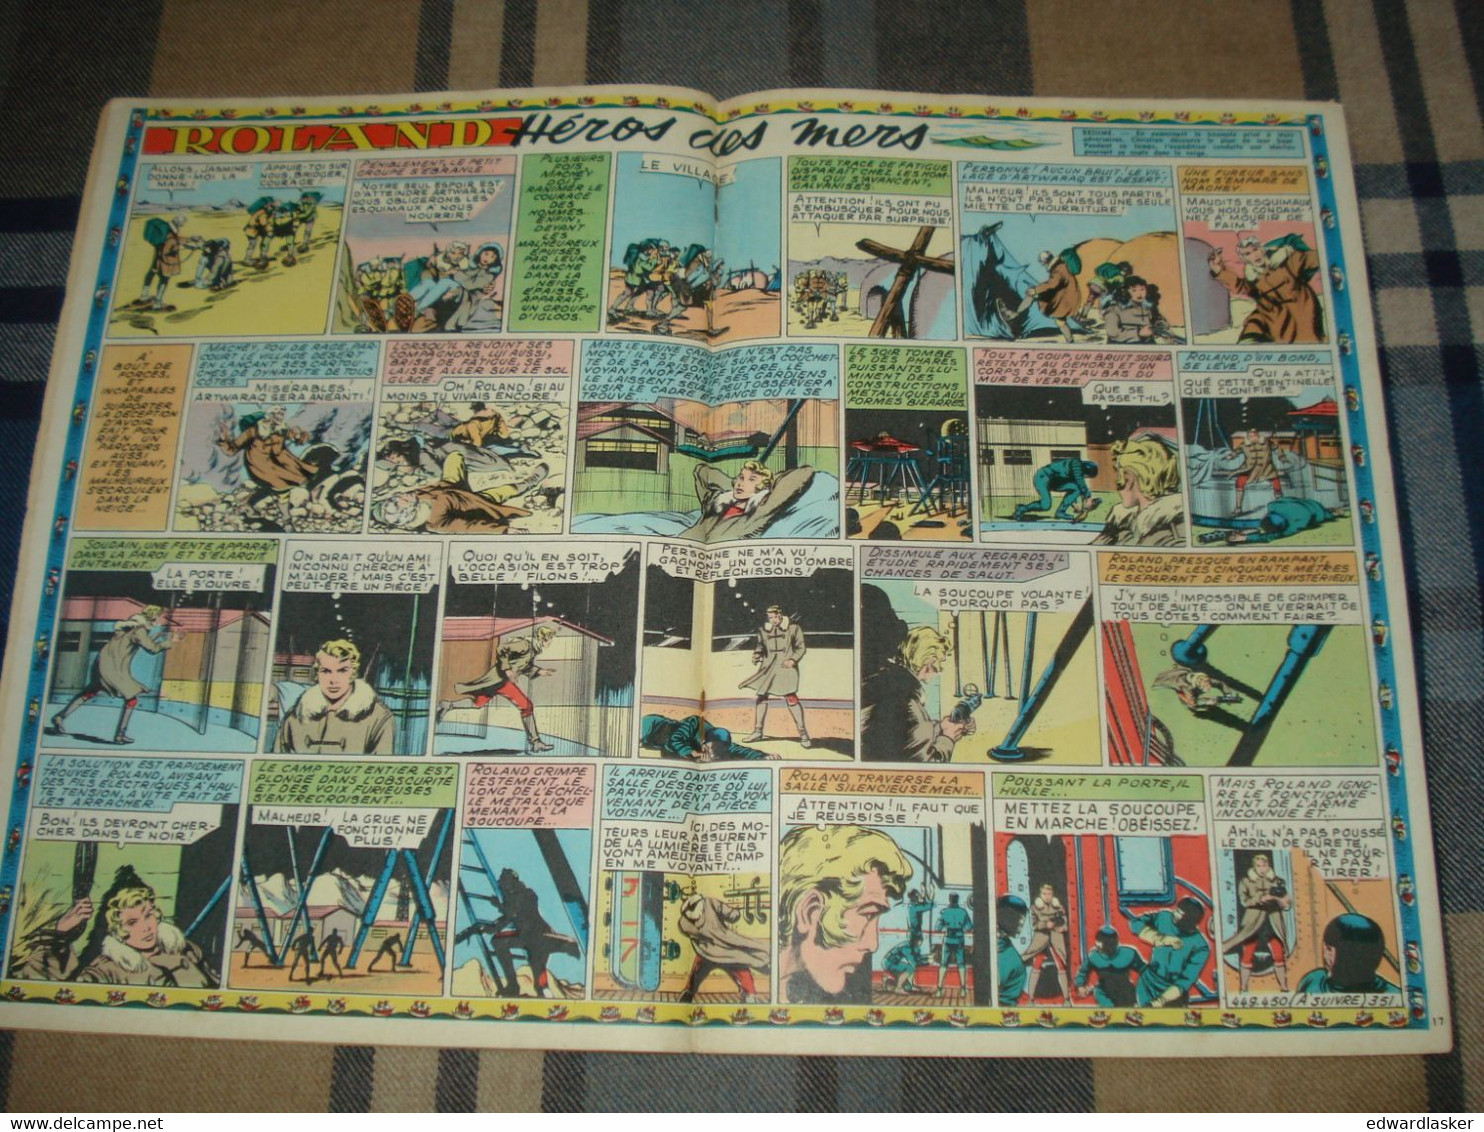 L'INTREPIDE - Lot de 12 numéros de 1953 à 1956 - Assez bon état - Erik - Le Rallic - Bugs Bunny